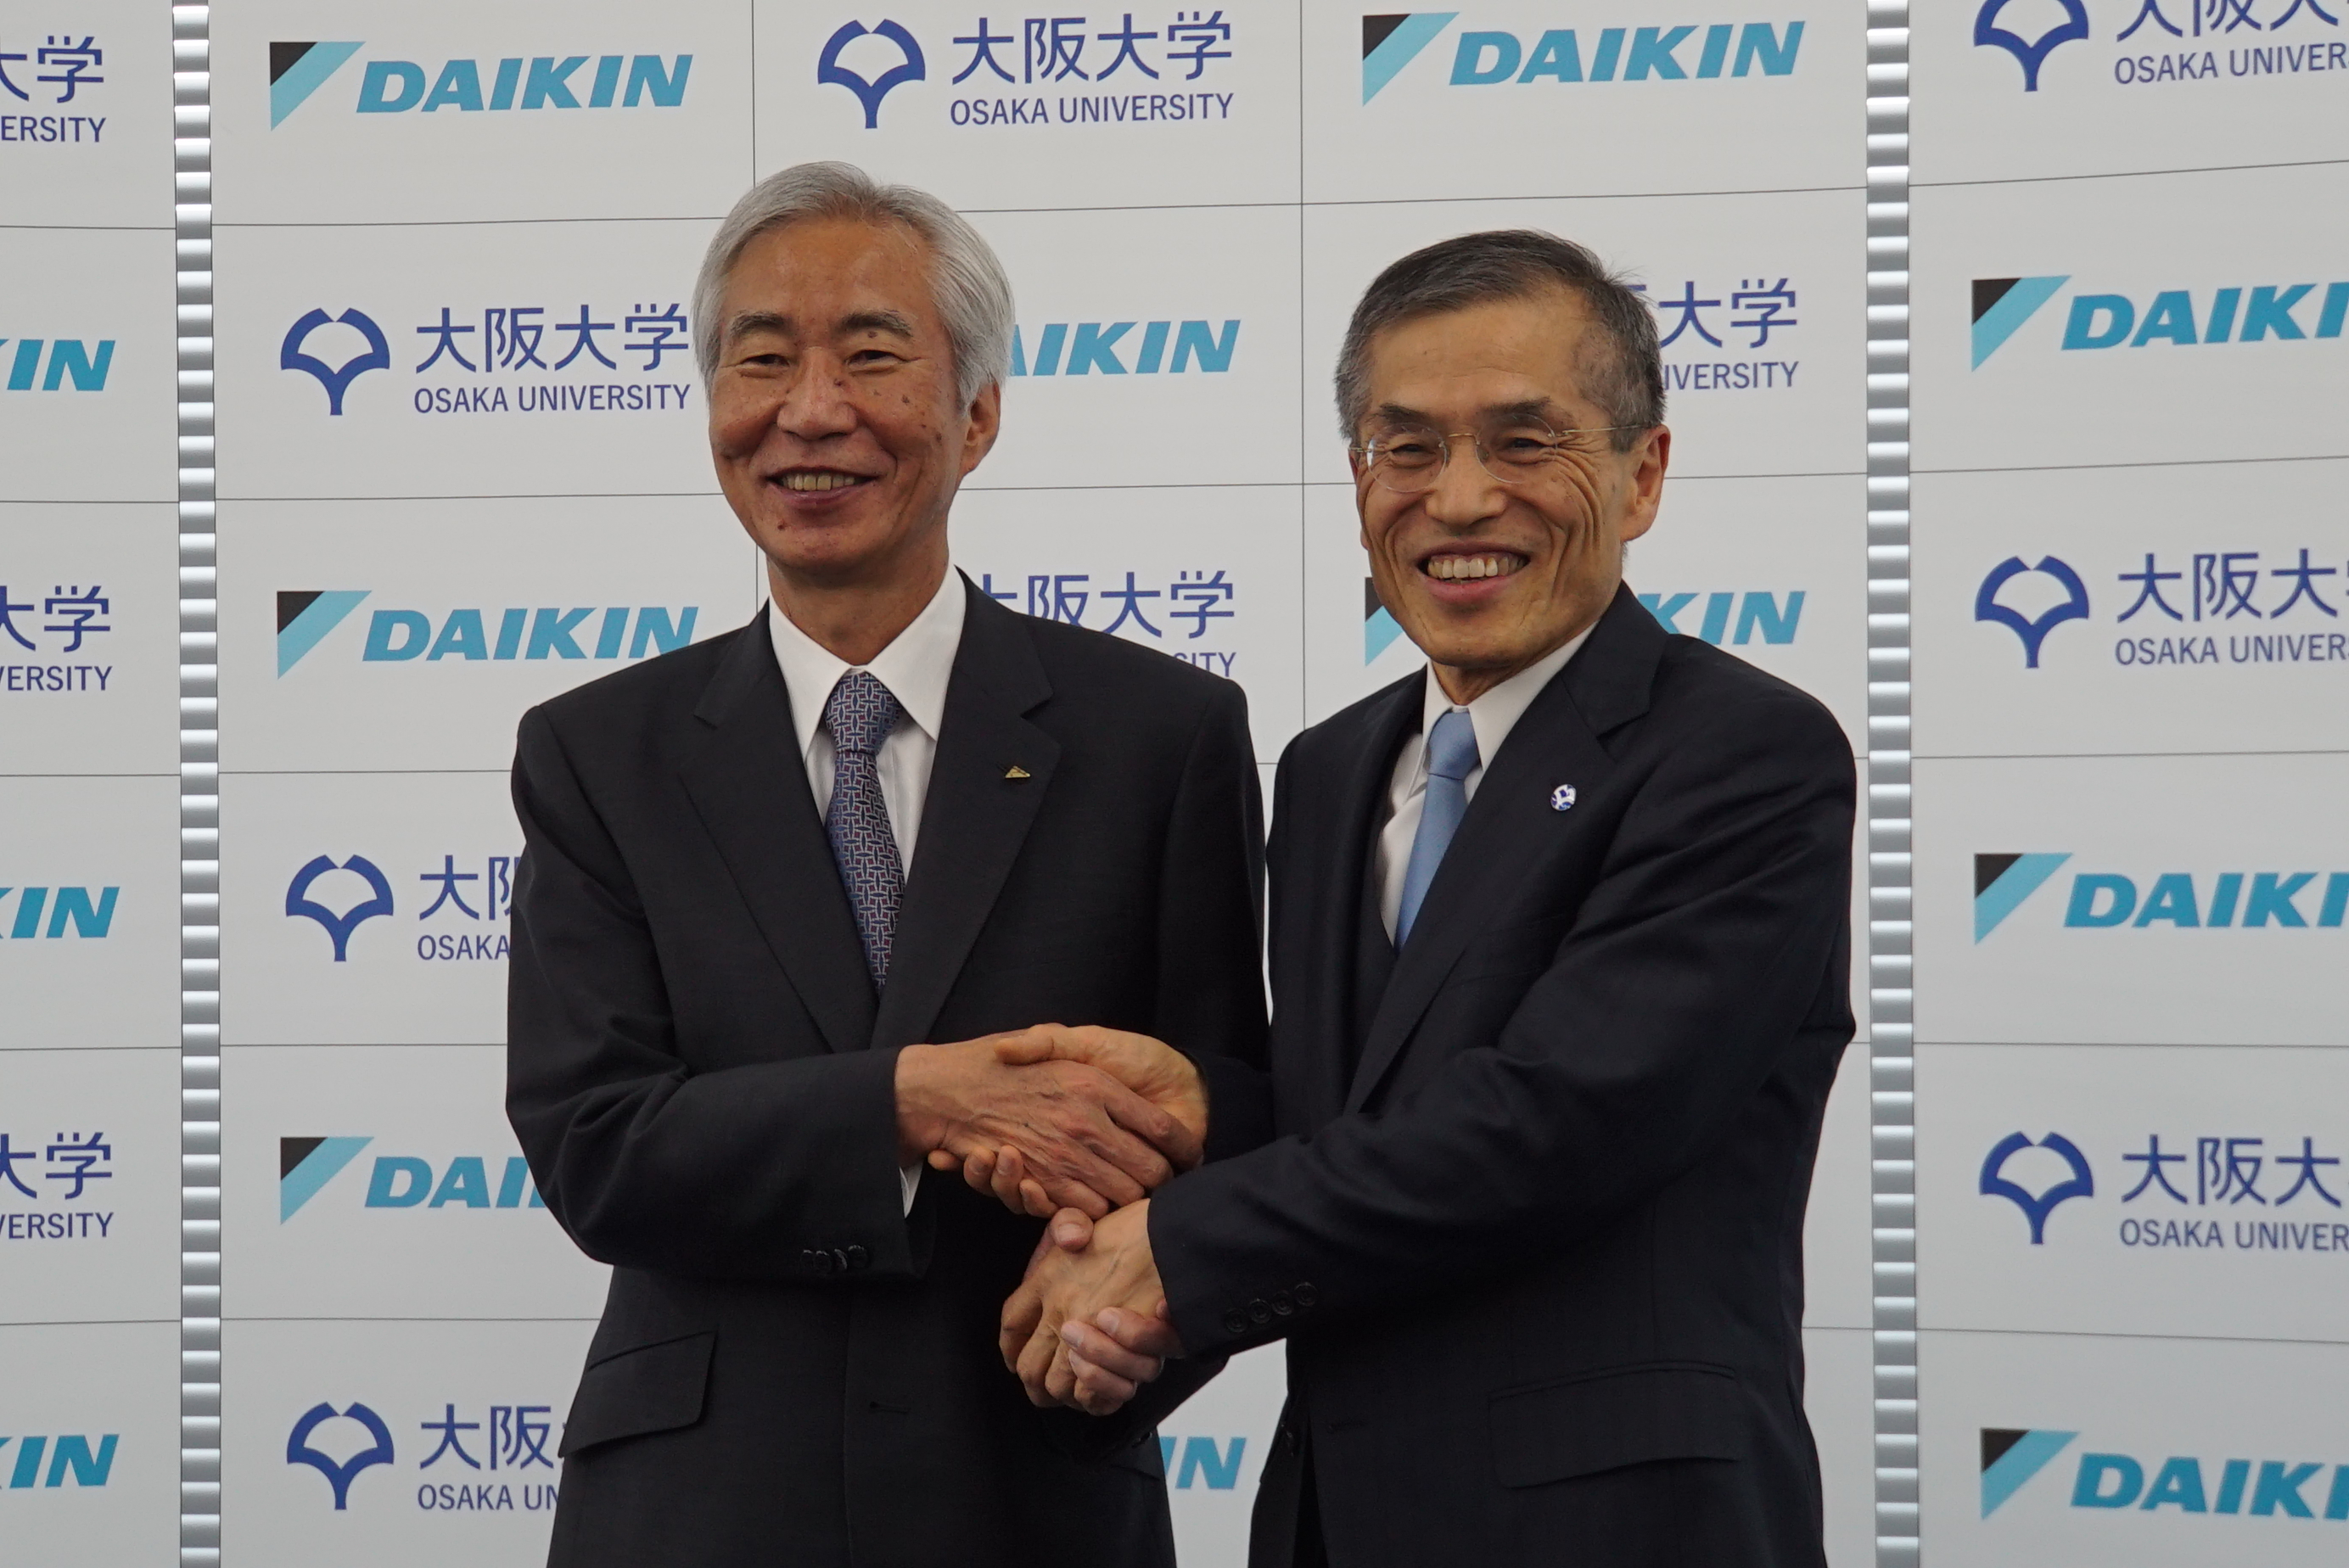 大阪大学とダイキン工業株式会社が包括連携契約を締結